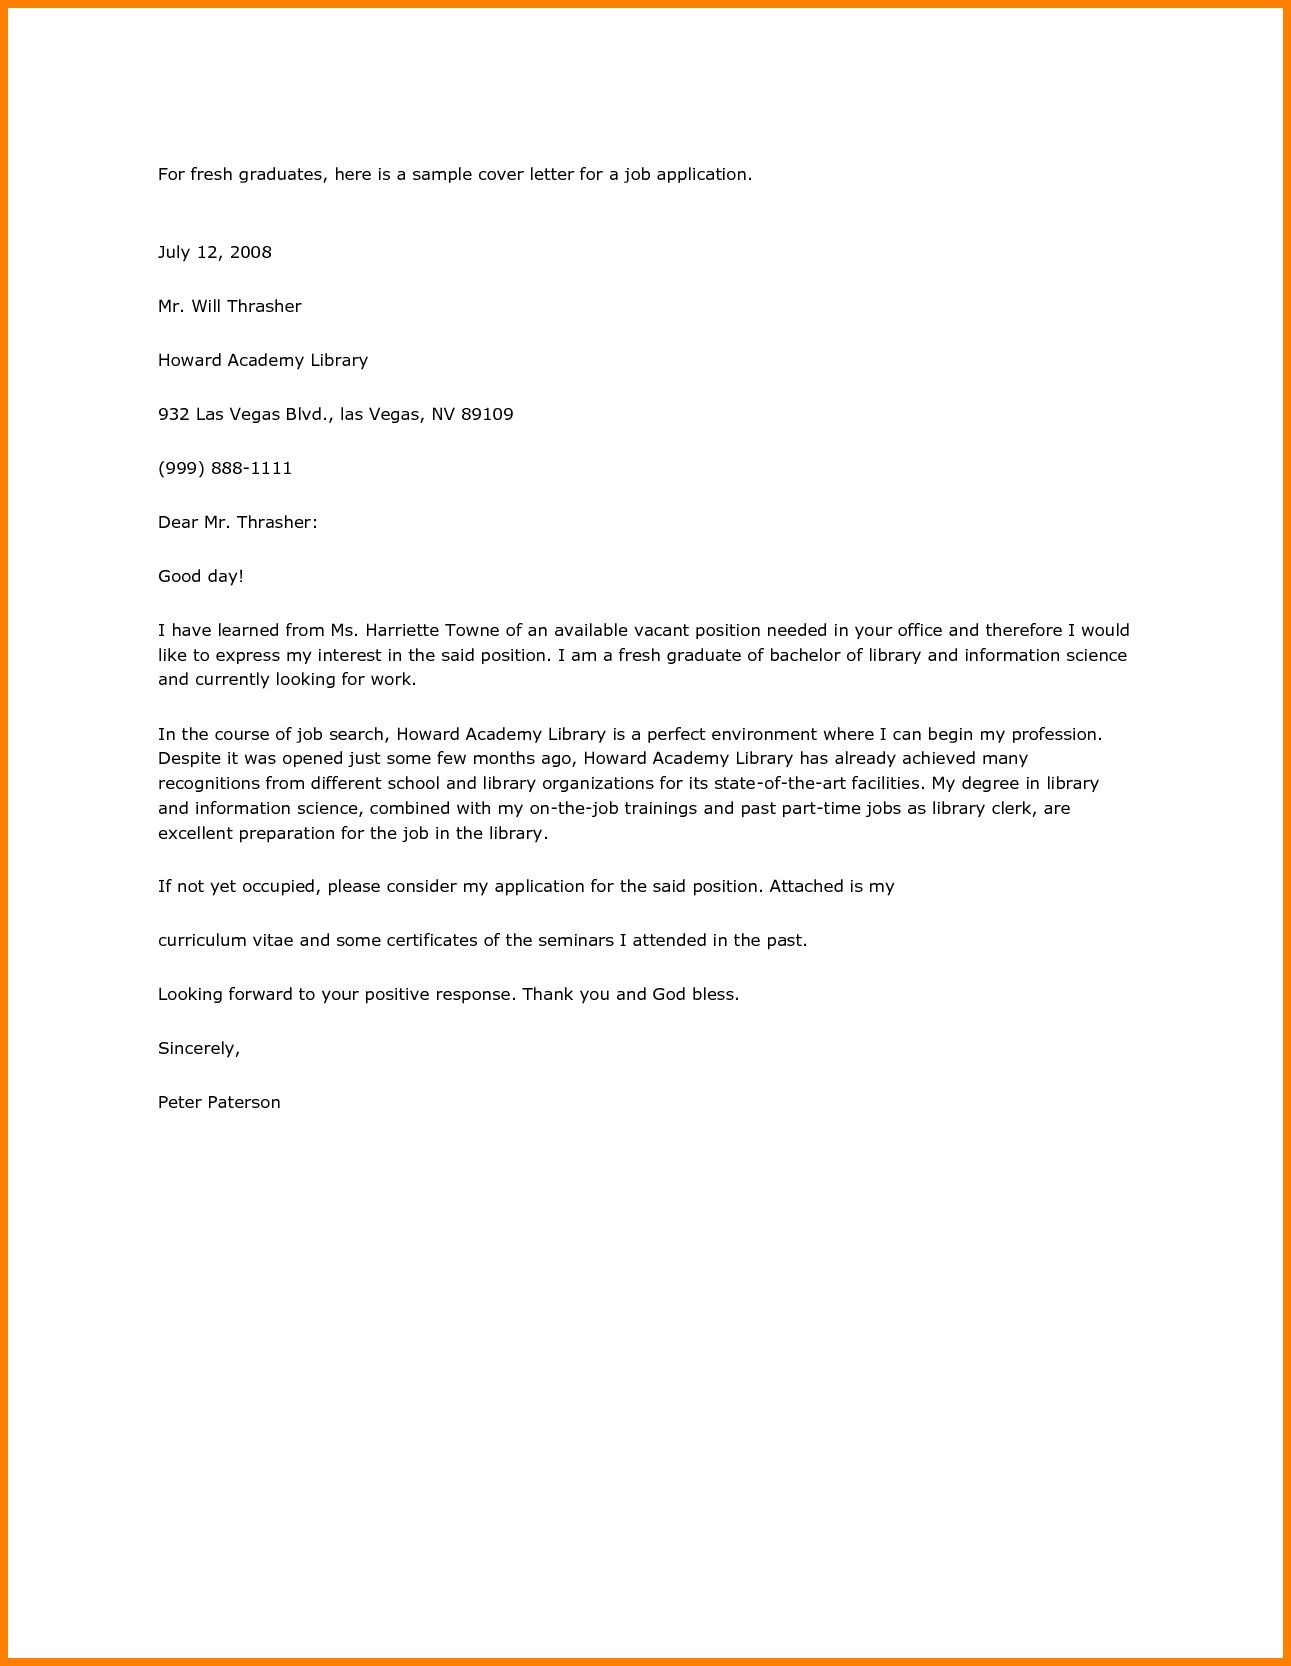 Resume Cover Letter Sample for Fresh Graduate Application Letter Sle for Fresh Graduate Pdf Job Cover Letter …